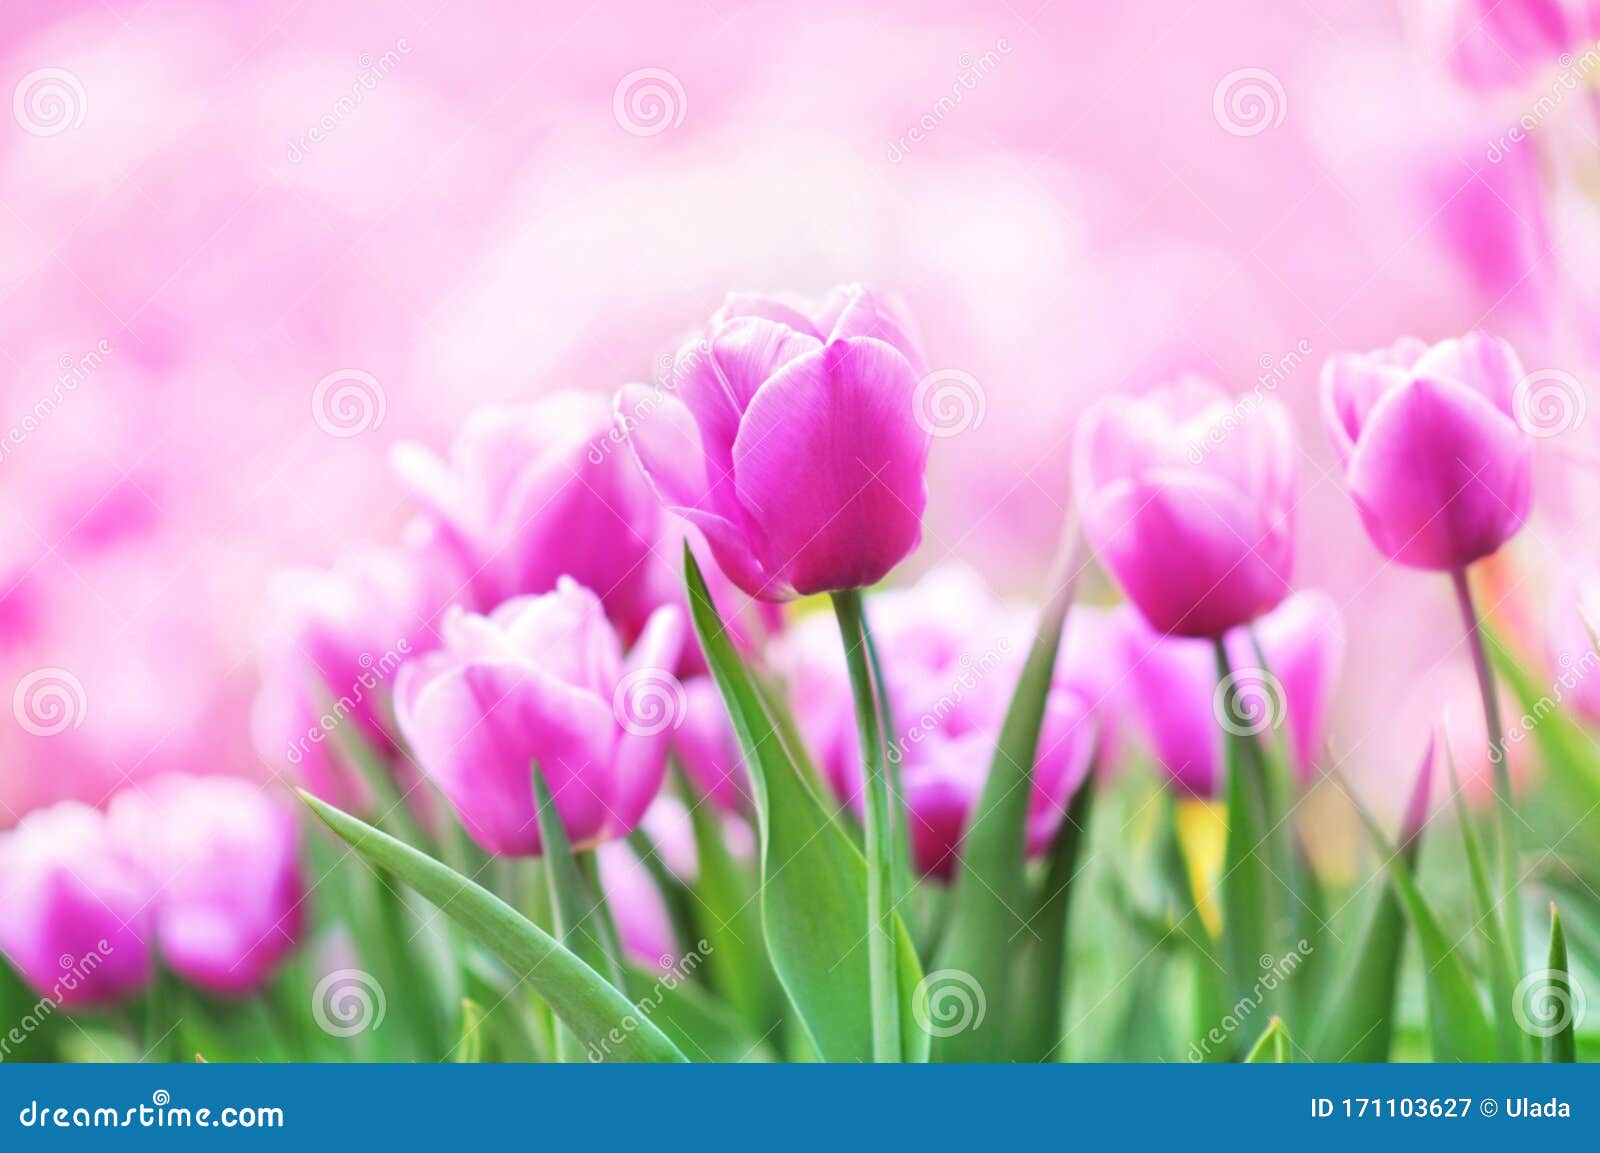 Lúa tươi đang rực rỡ màu sắc trải khắp cánh đồng. Cảnh sắc tuyệt đẹp của đồng tulip này sẽ là một trải nghiệm thú vị cho mọi người yêu thích thiên nhiên. Đến với hình ảnh này, bạn sẽ được thưởng thức vẻ đẹp tuyệt đỉnh của đồng tulip và cùng tận hưởng khoảnh khắc yên bình giữa thiên nhiên.